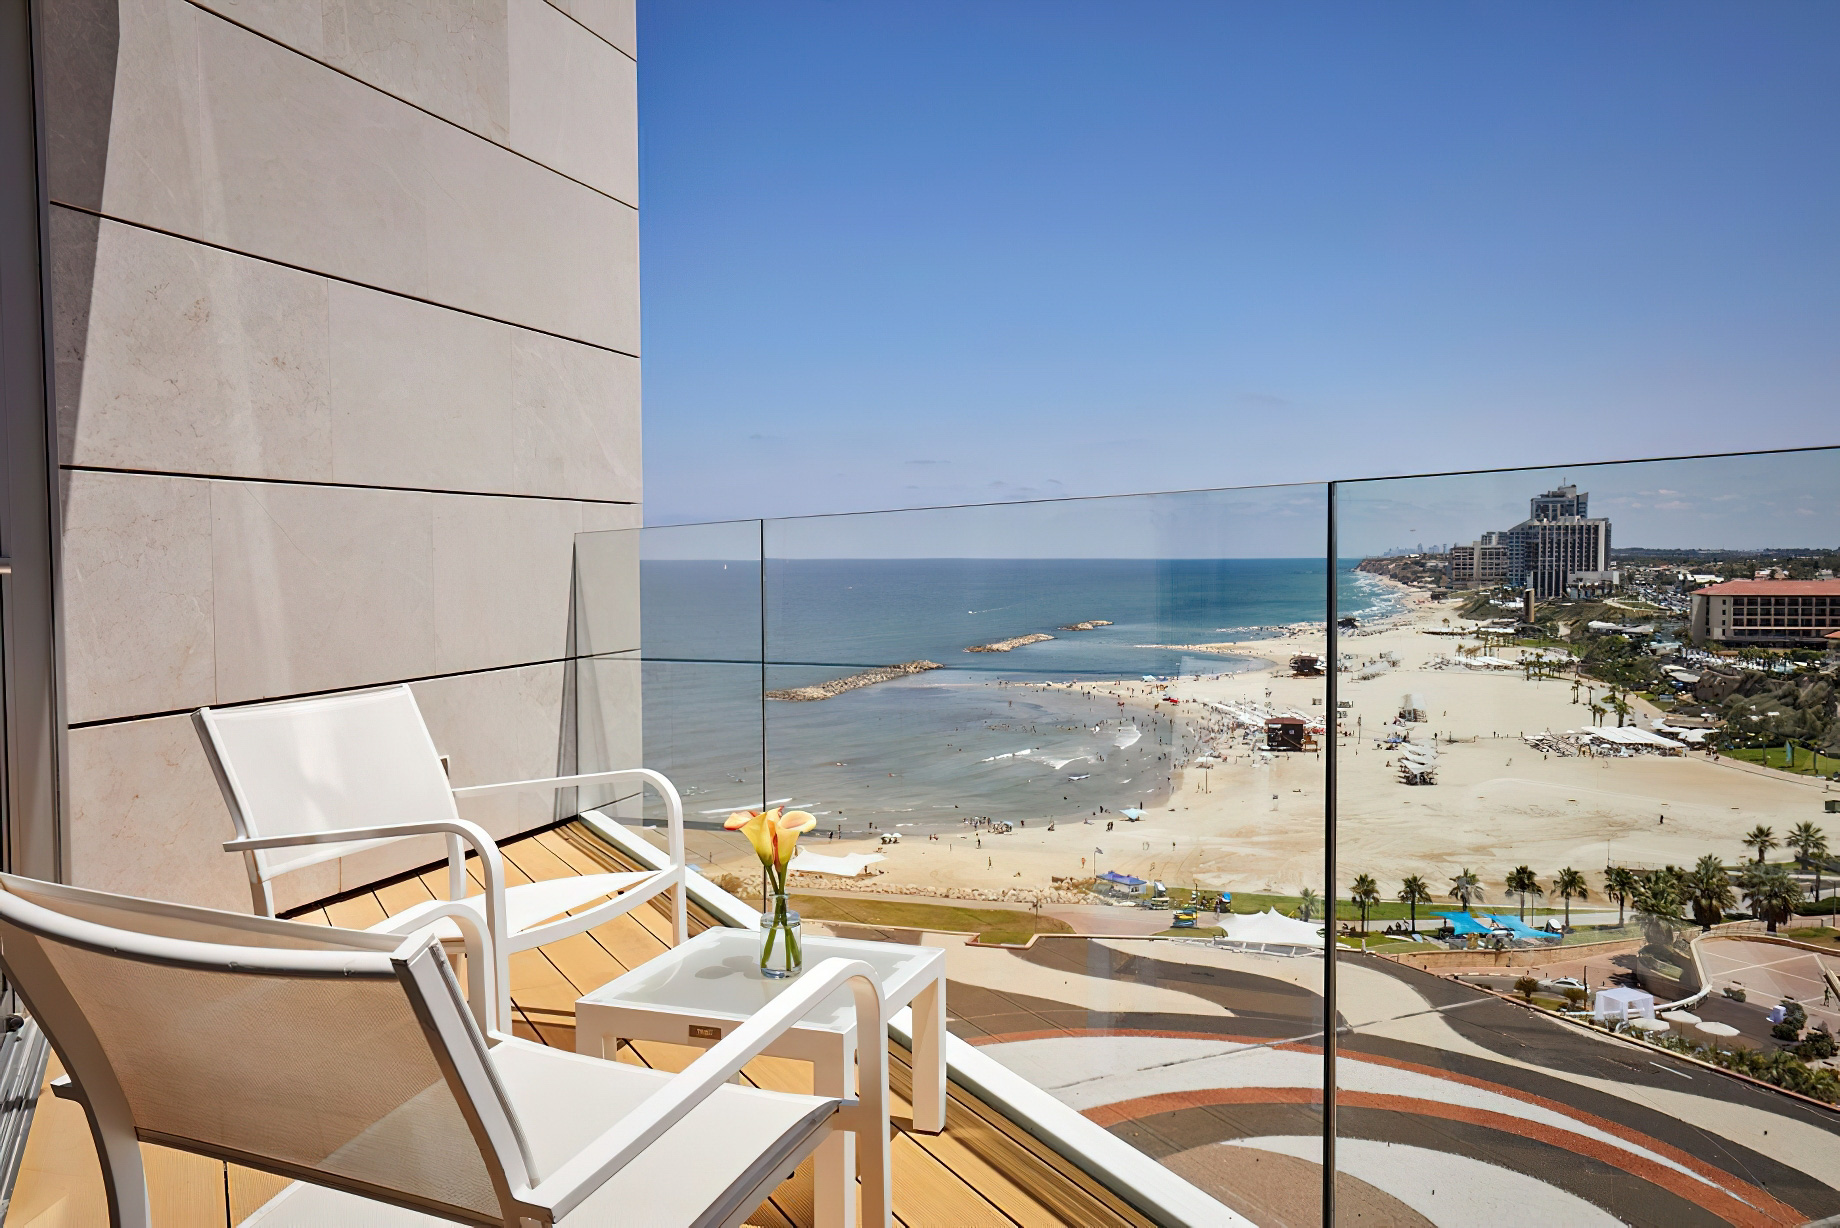 The Ritz-Carlton, Herzliya Hotel - Herzliya, Israel - Studio Room Balcony